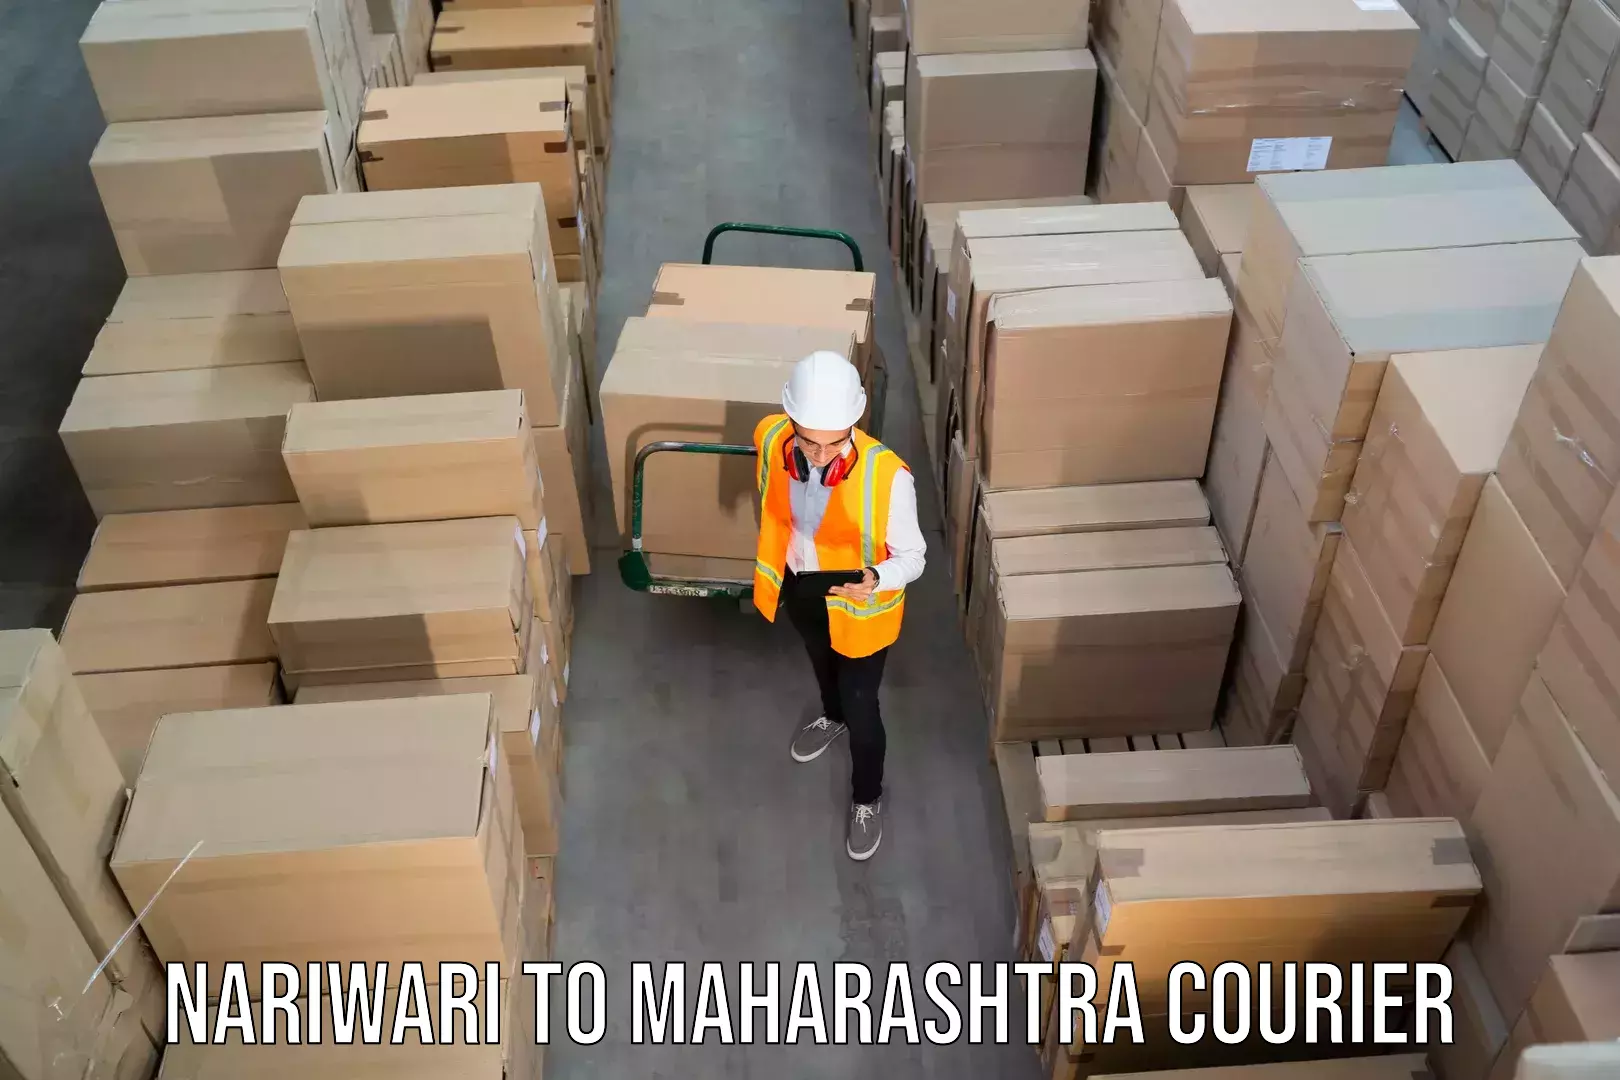 Reliable courier service Nariwari to Ballarpur